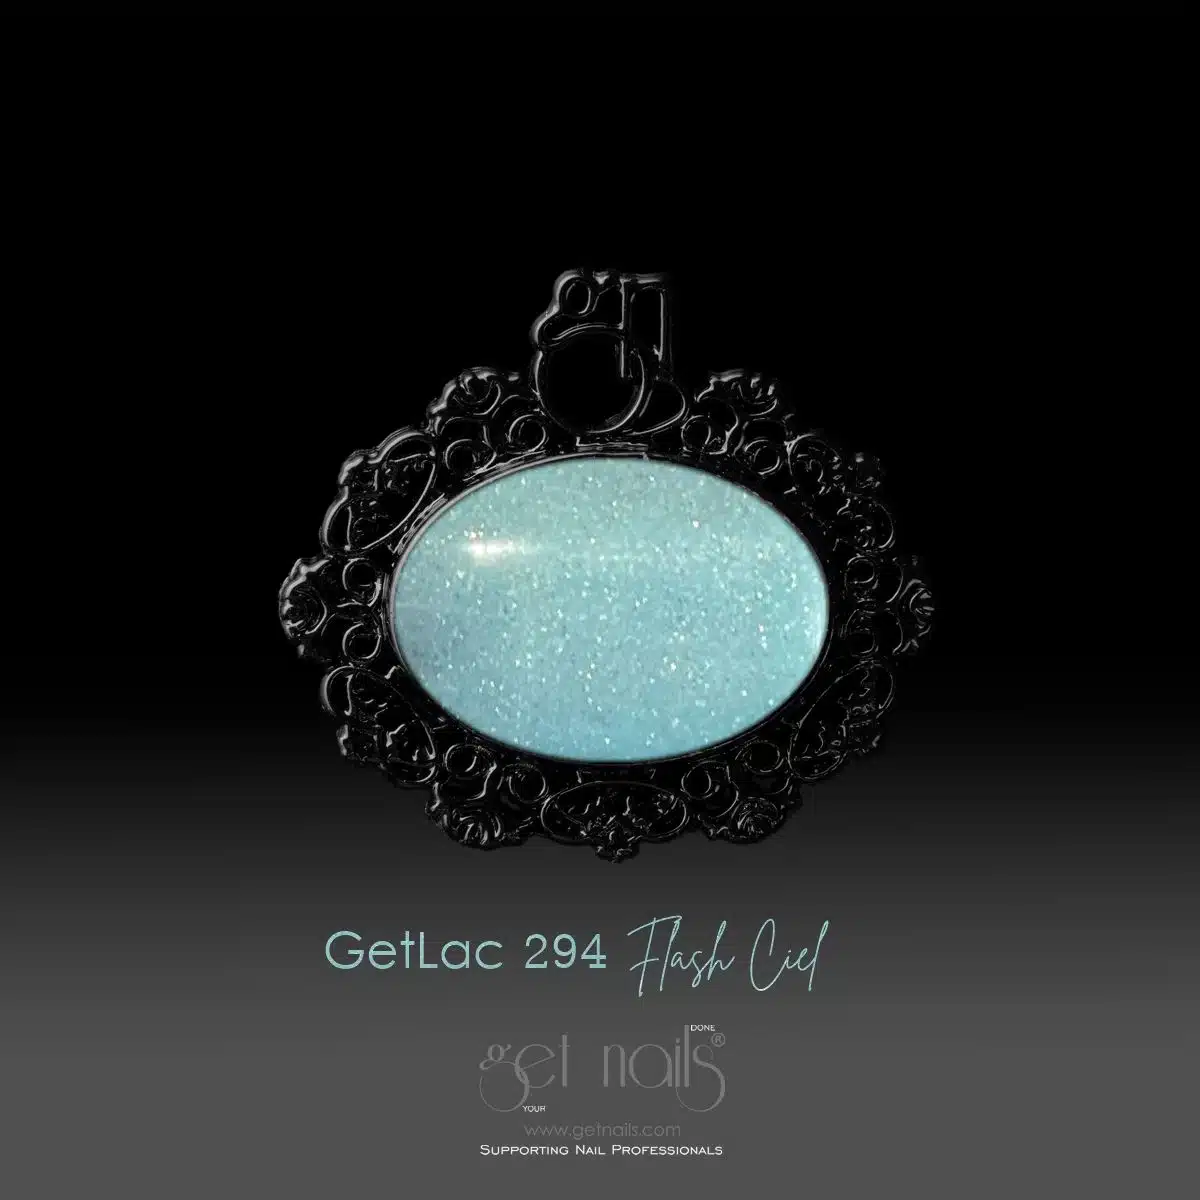 Get Nails Austria - GetLac 294 Flash Ciel 15г